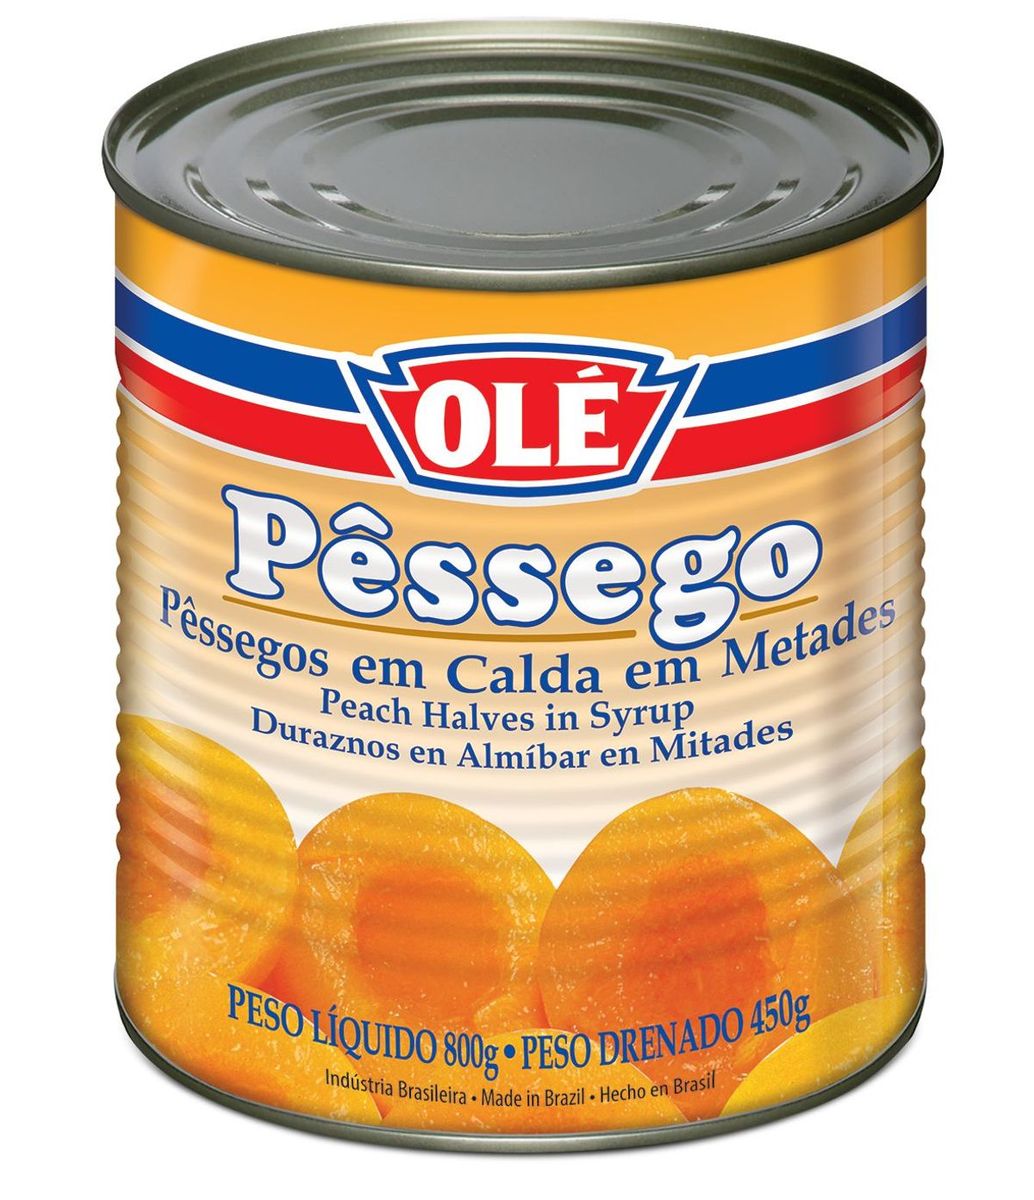 Geleia de Pêssego 300g - Cesta Camponesa